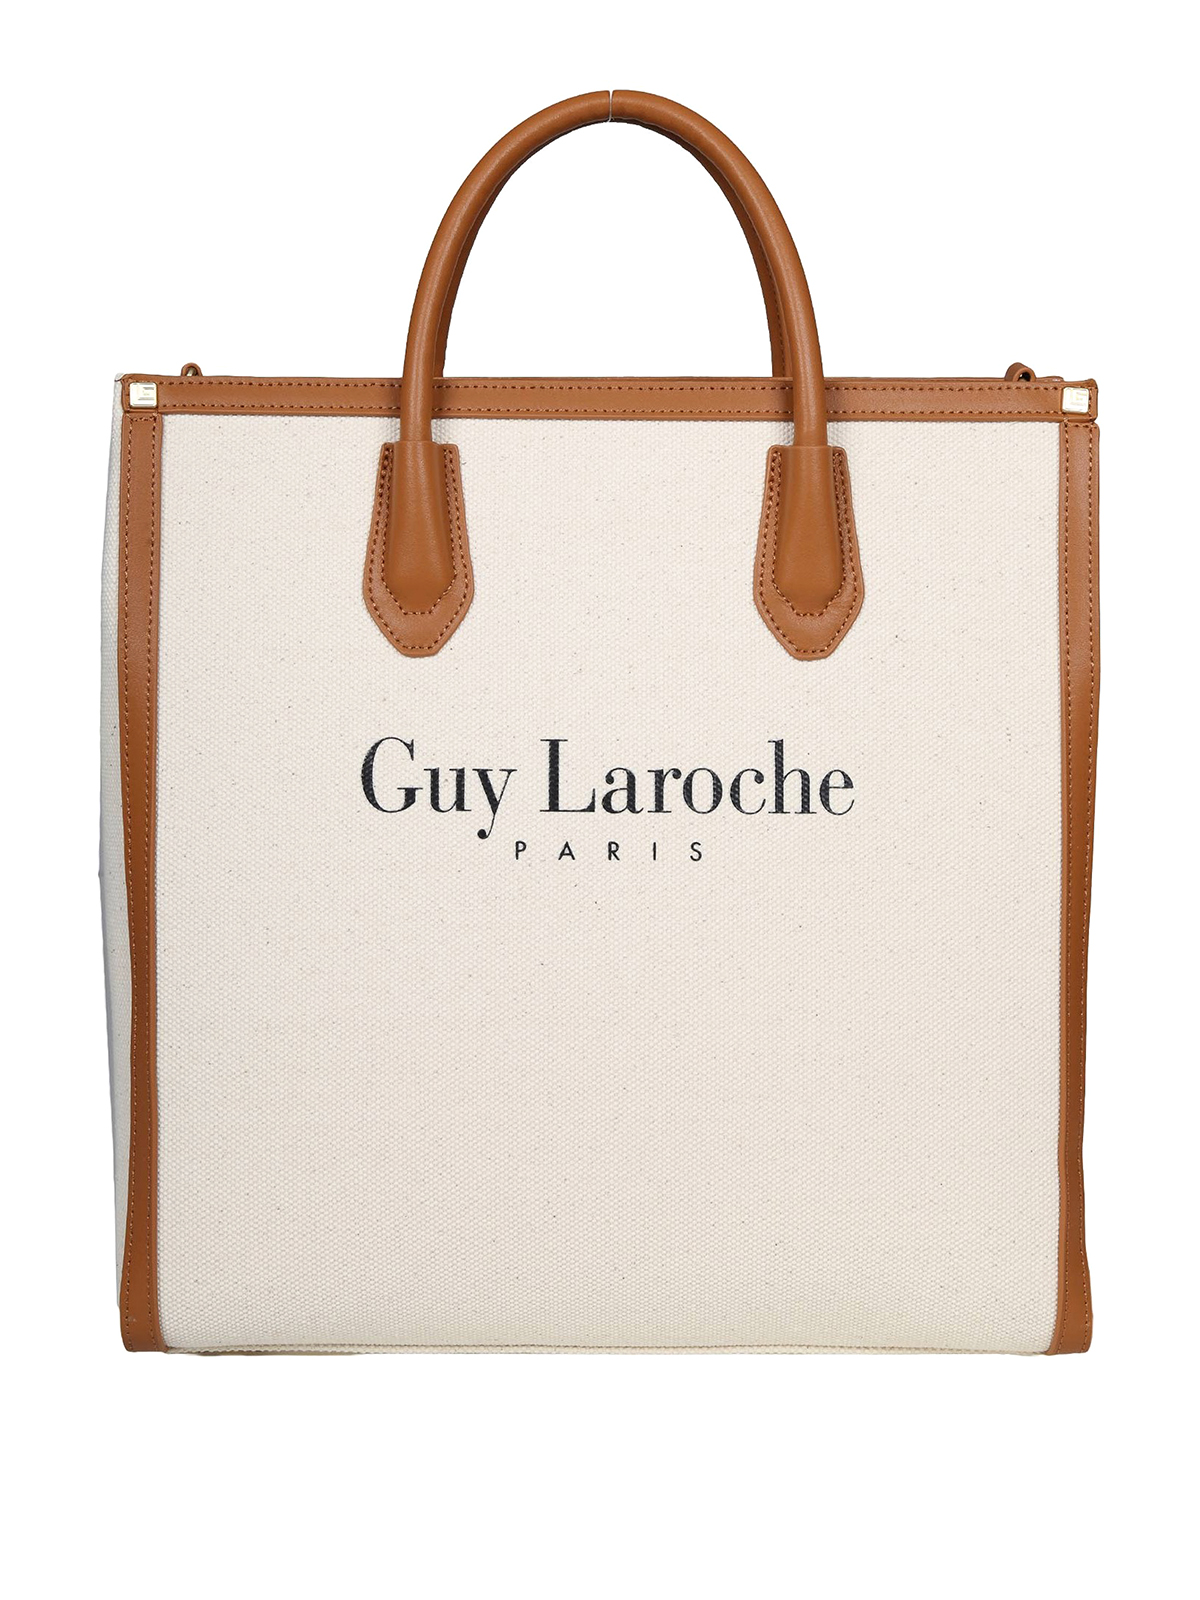 Guy Laroche Tote Bag